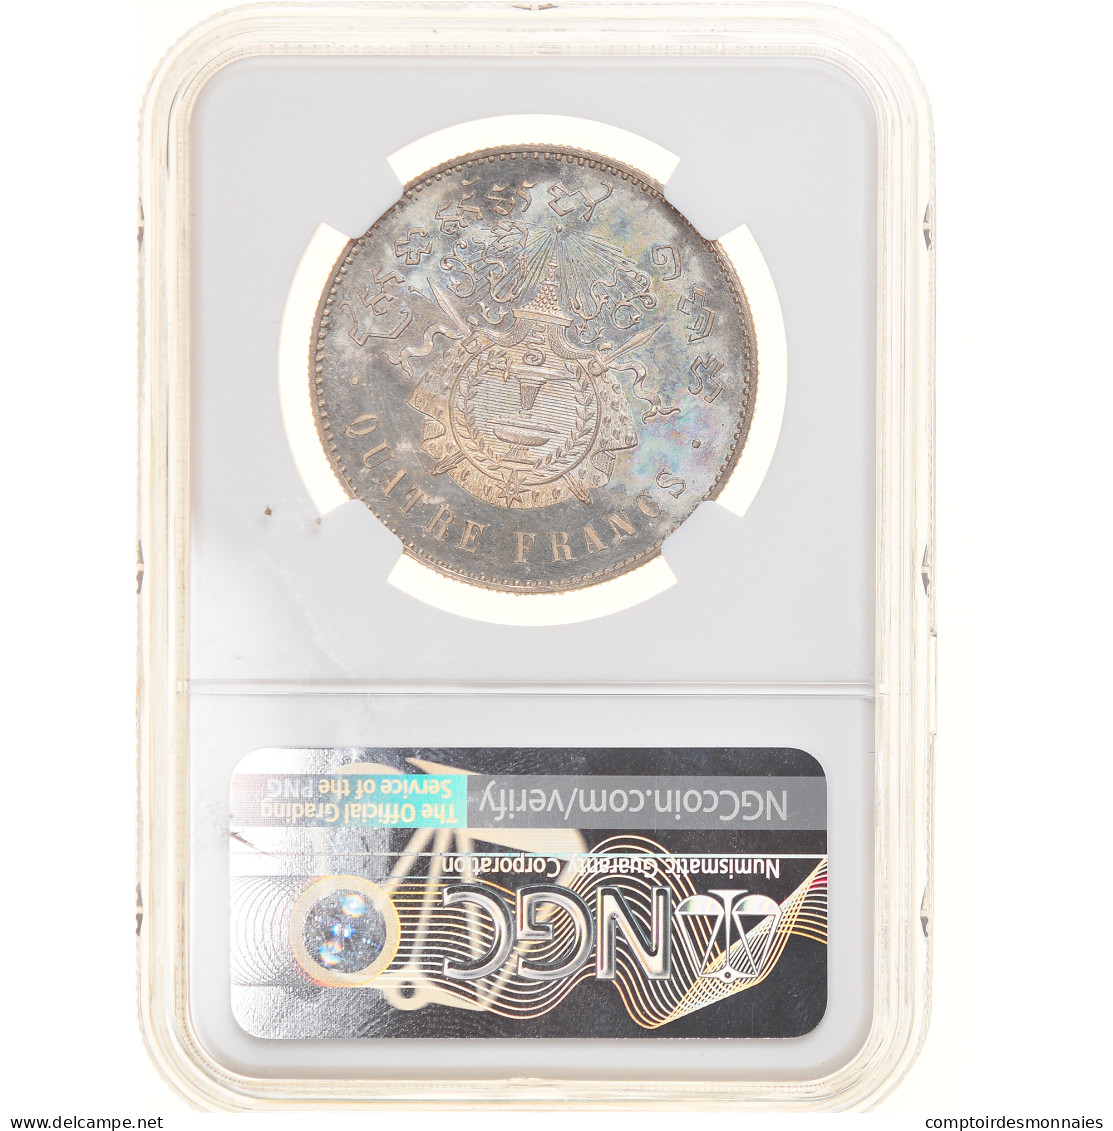 Monnaie, Cambodge, 4 Francs, 1860, ESSAI, NGC, PF63, SPL, Argent, KM:E9 - Cambogia